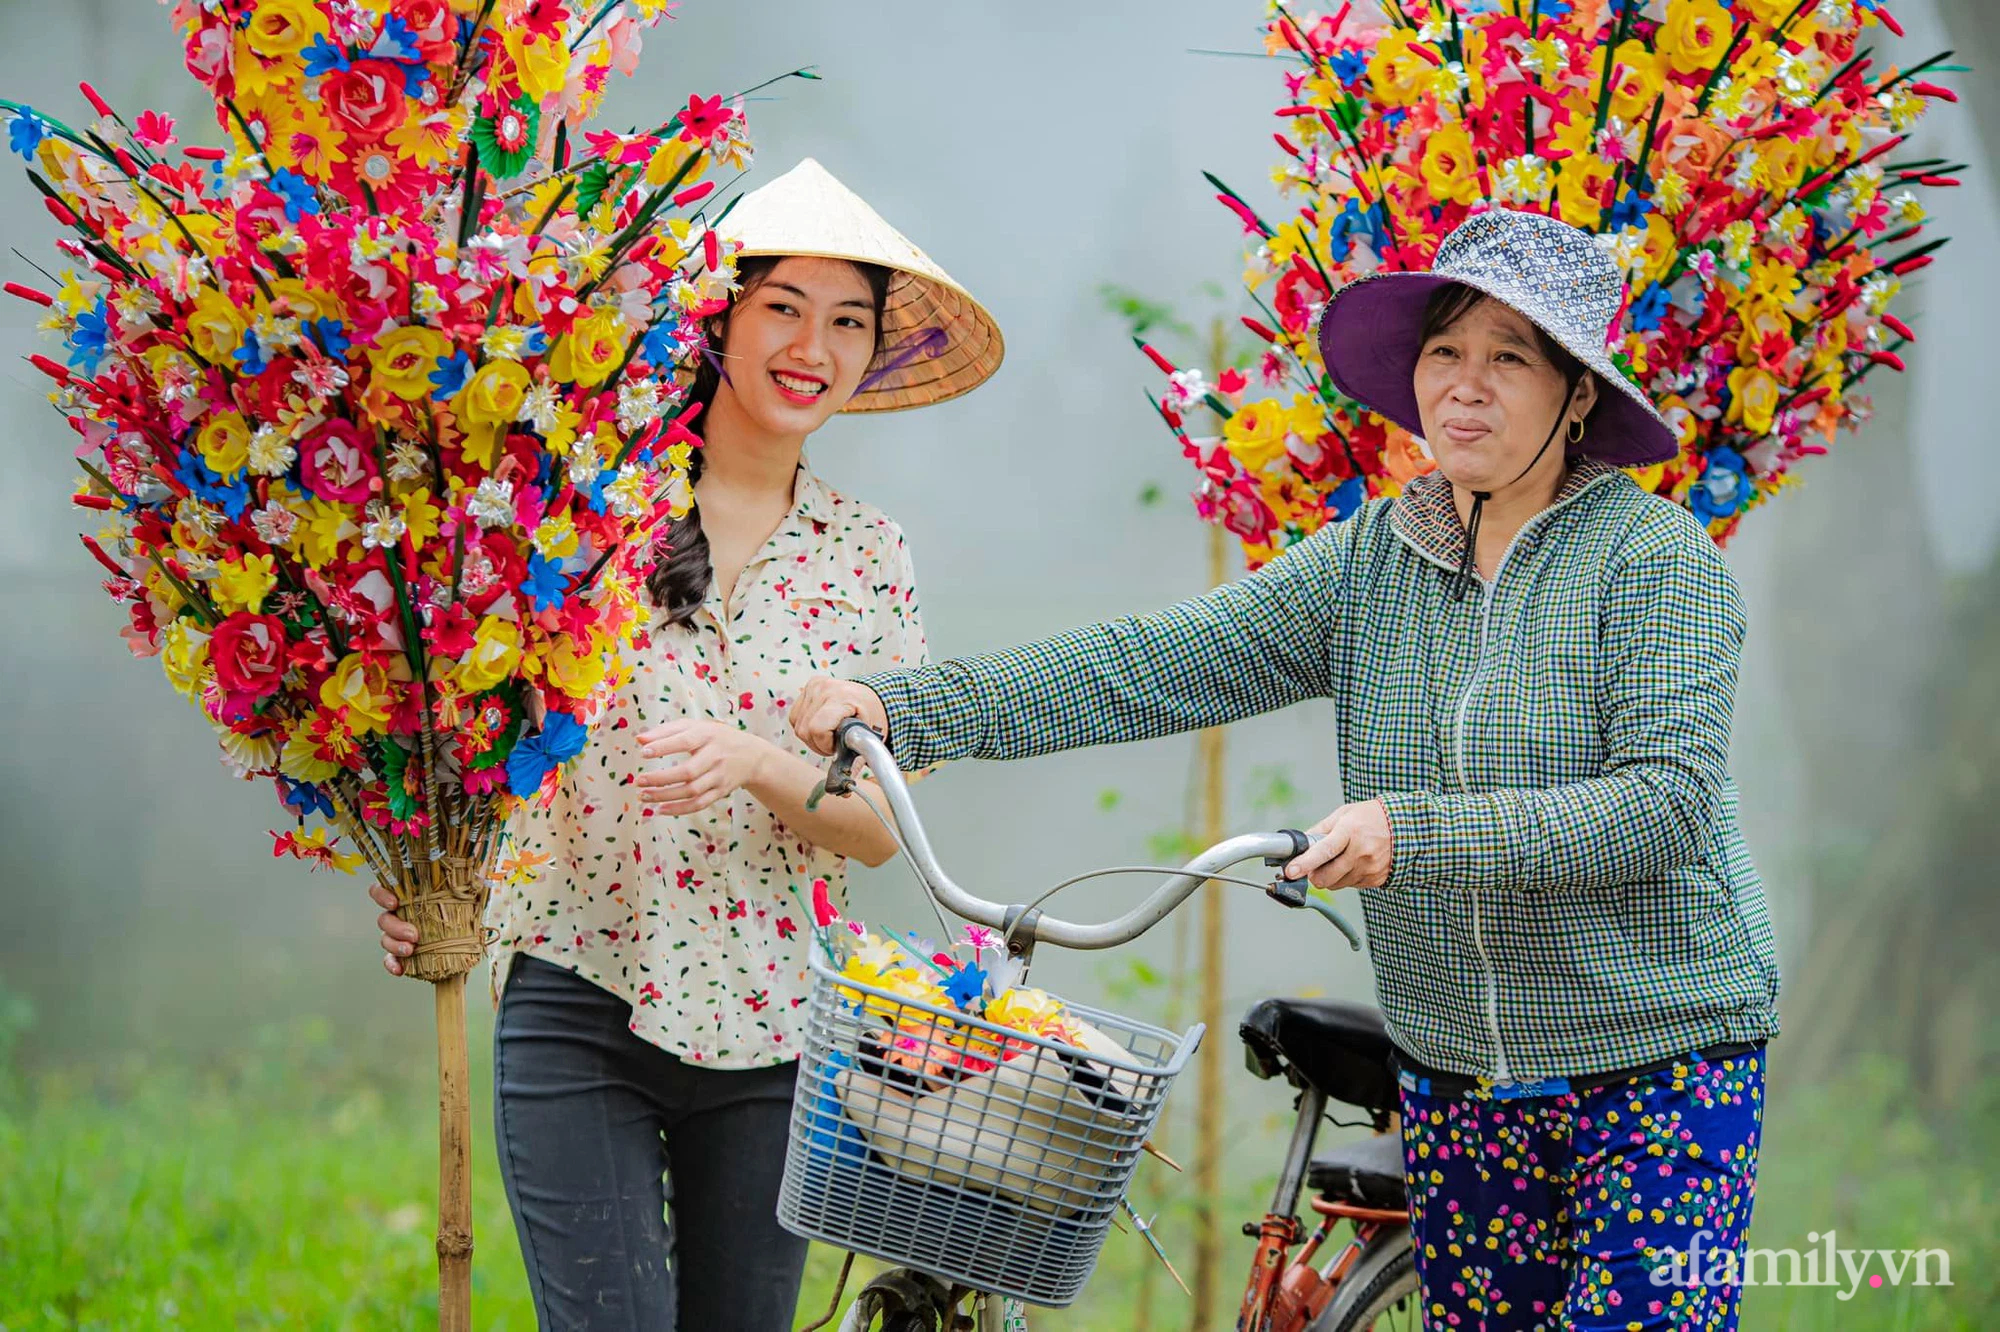 Cứ đến Tết làng hoa giấy Thanh Tiên lại rực rỡ sắc màu - nét đẹp tâm linh tồn tại hơn 300 năm ở Huế - Ảnh 12.